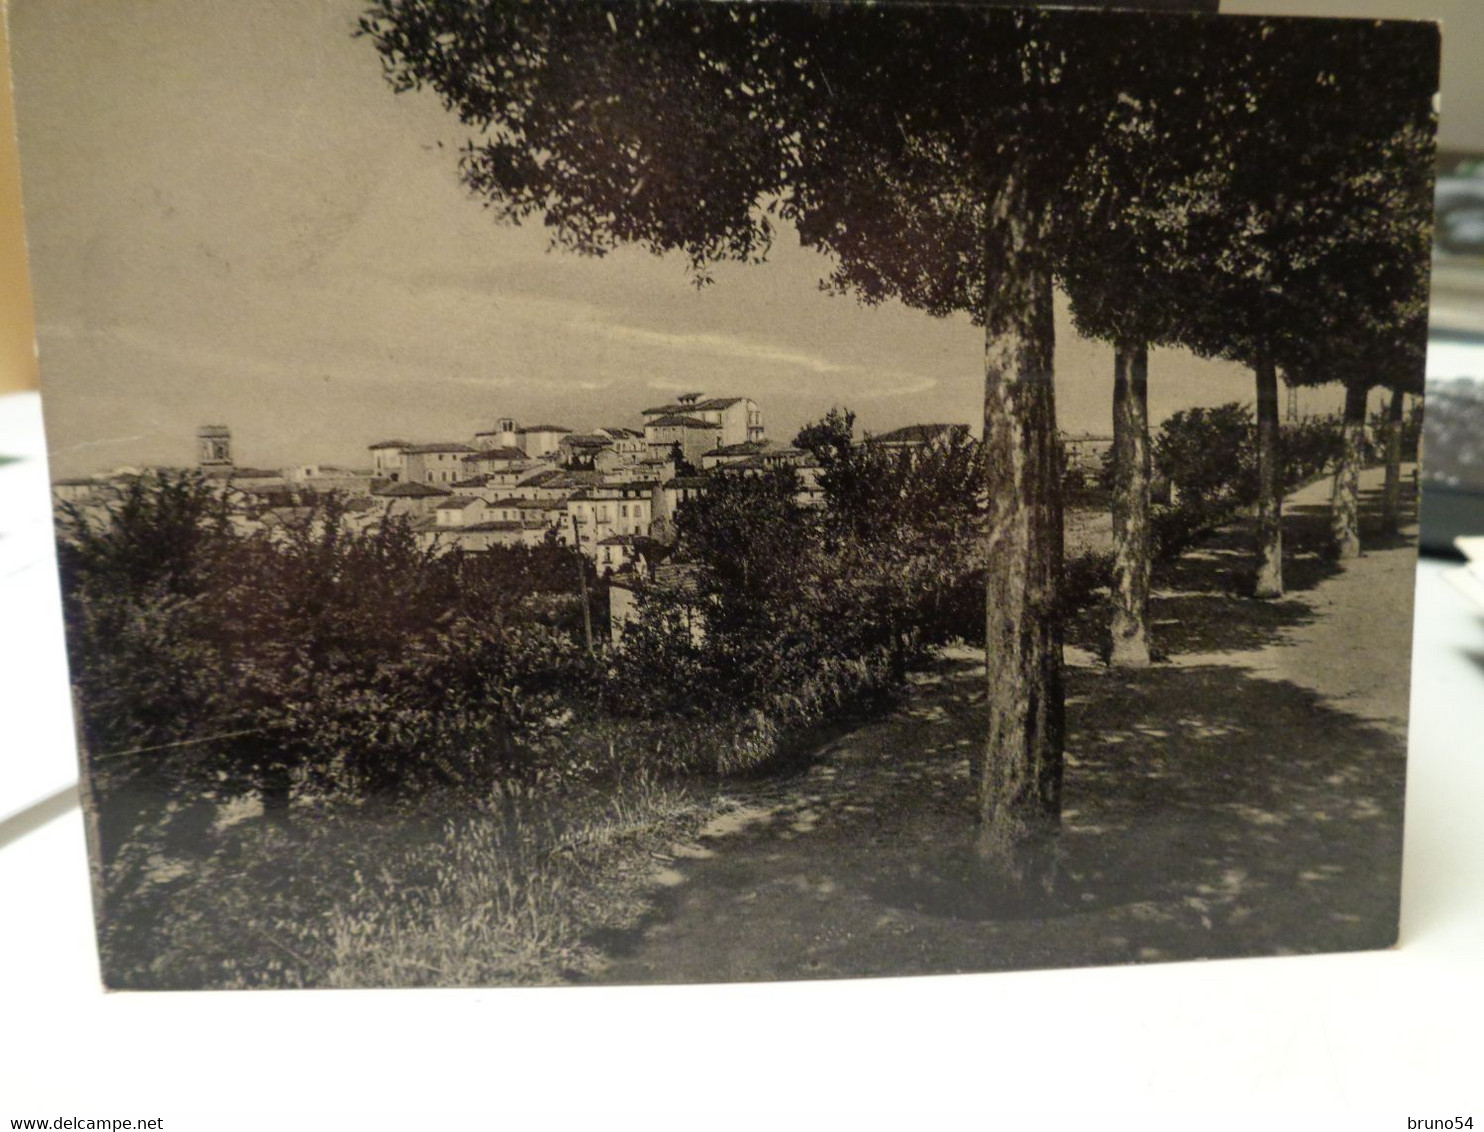 Cartolina  Ariano Irpino Prov Avellino  Panorama 1953 - Avellino